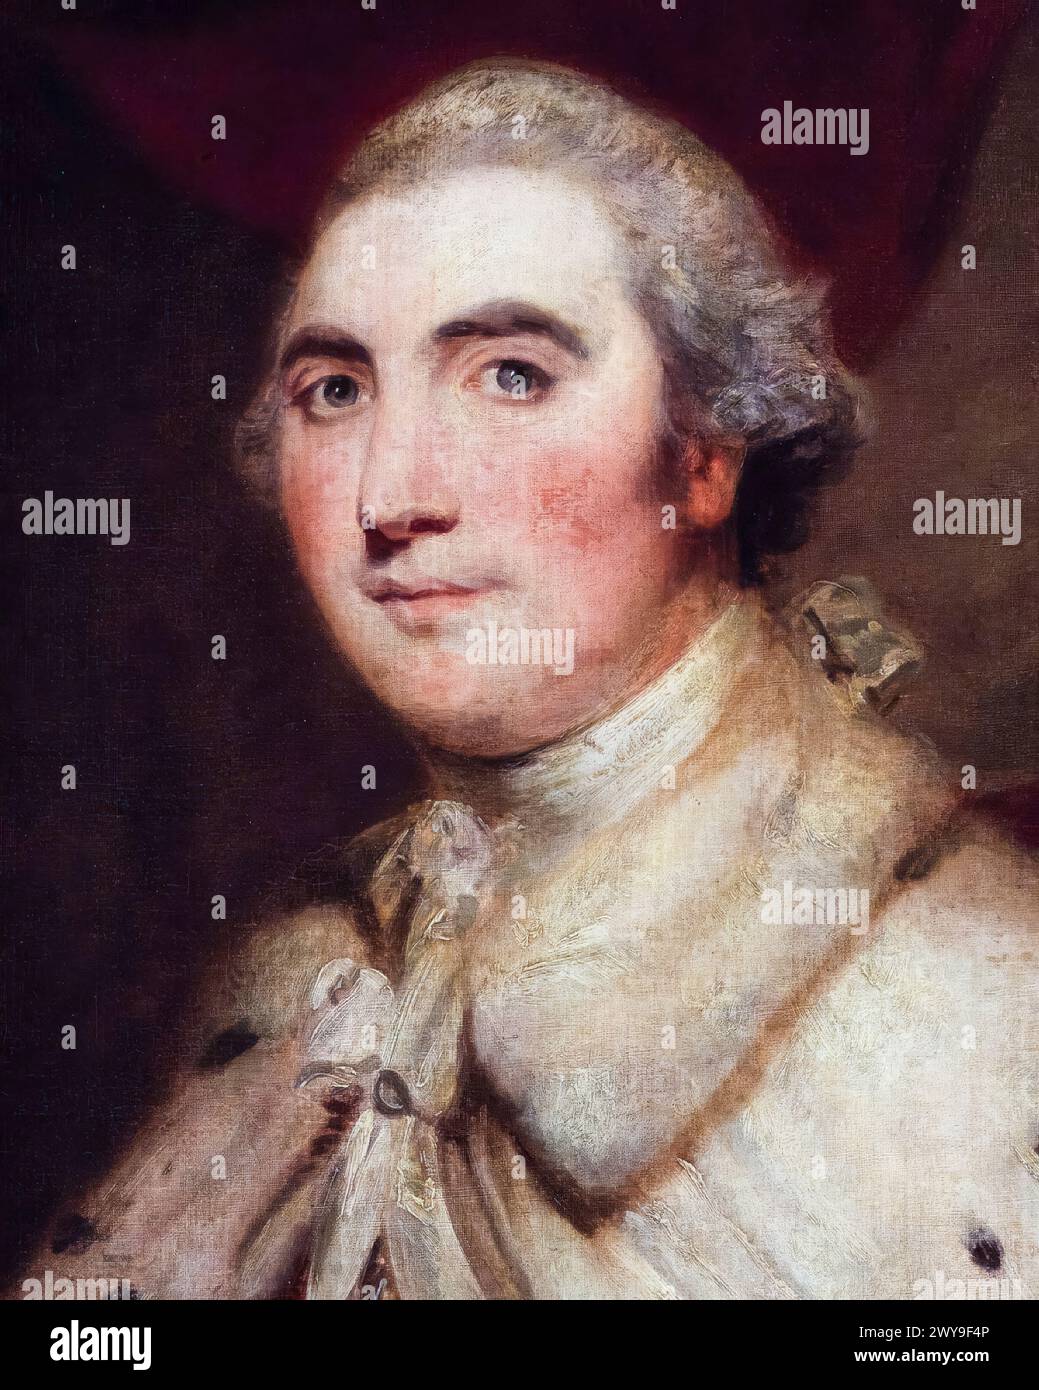 William Petty, 2e comte de Shelburne (1737-1805), homme politique whig anglo-irlandais et premier ministre de Grande-Bretagne 1782-1783, portrait peint à l'huile sur toile d'après Sir Joshua Reynolds, 1766-1799 Banque D'Images